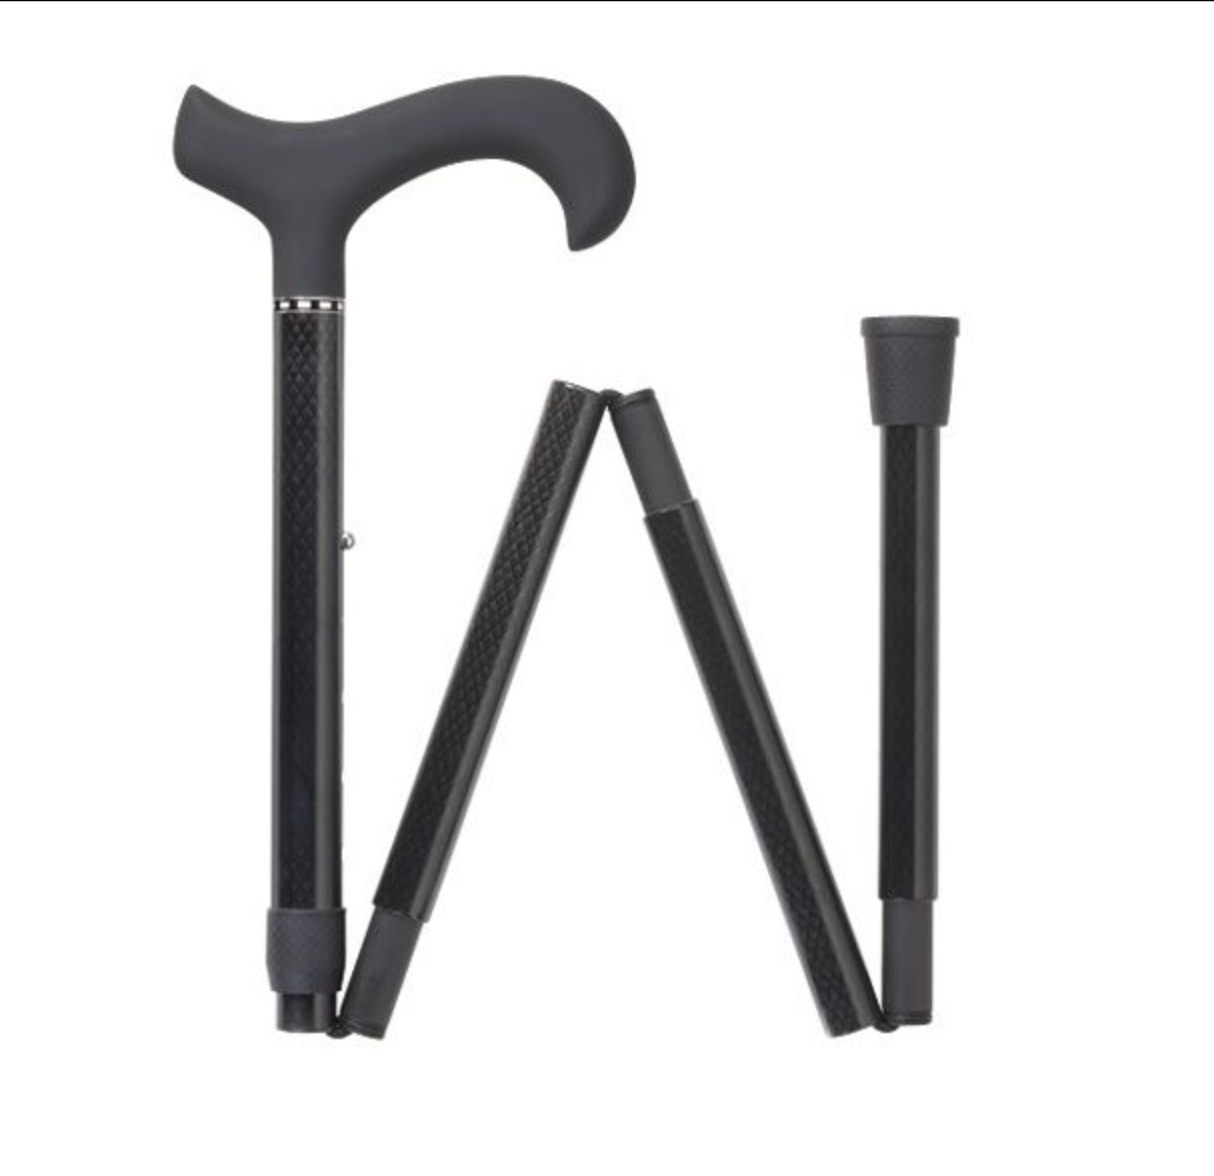 Carbon Fiber Folding Adjustable Walking Stick 33-37